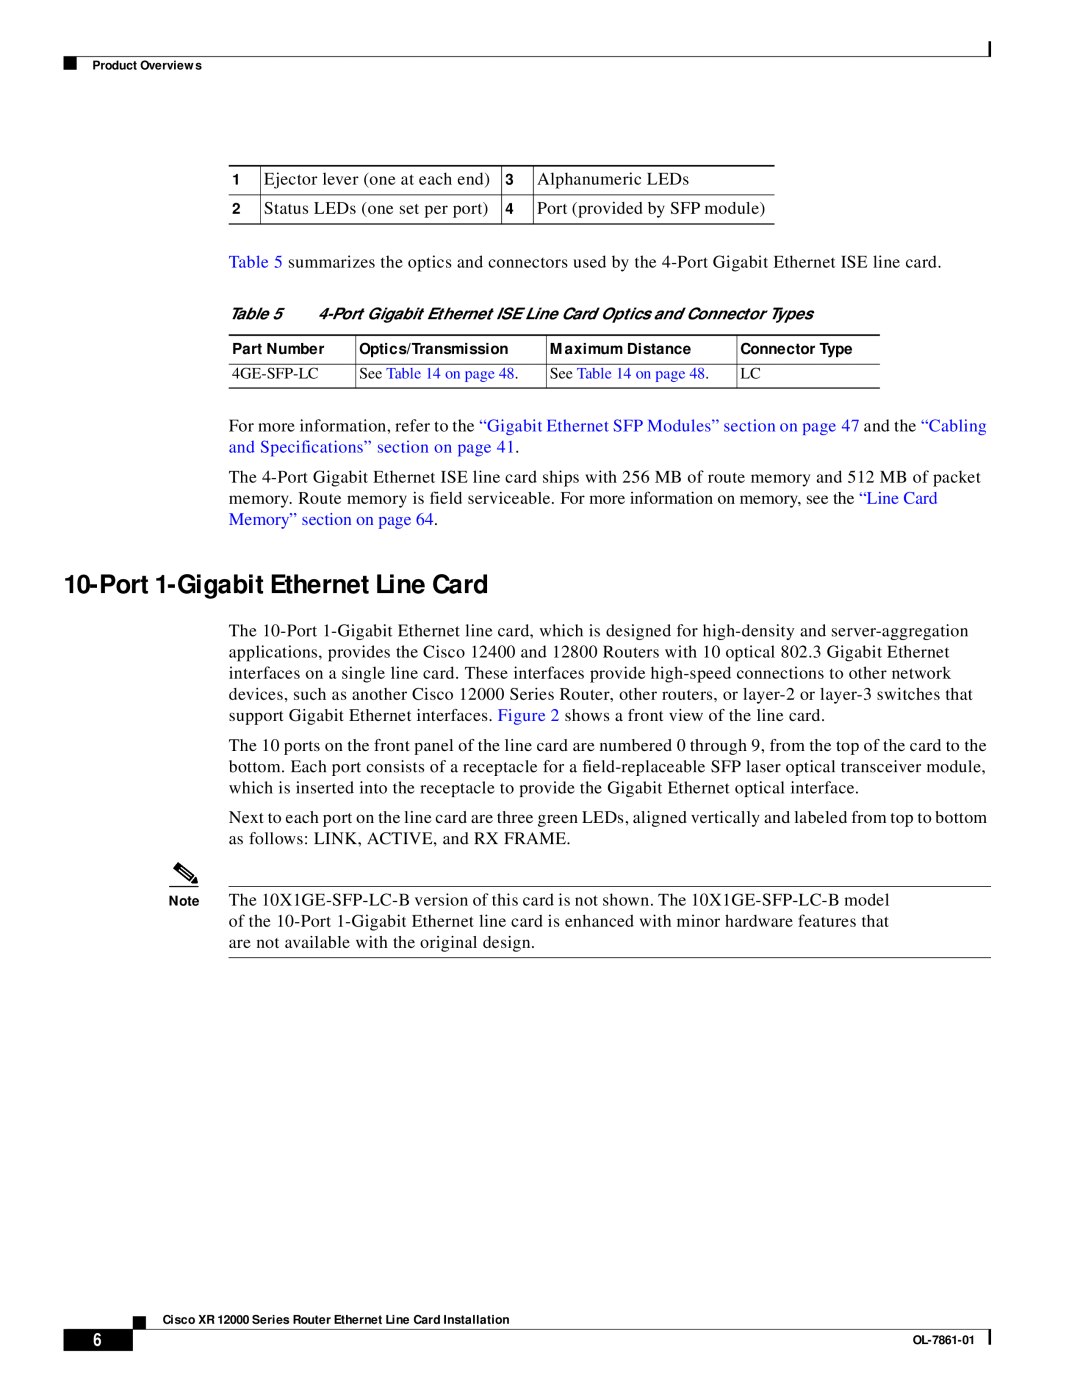 Cisco Systems OL-7861-01 manual Port 1-Gigabit Ethernet Line Card 